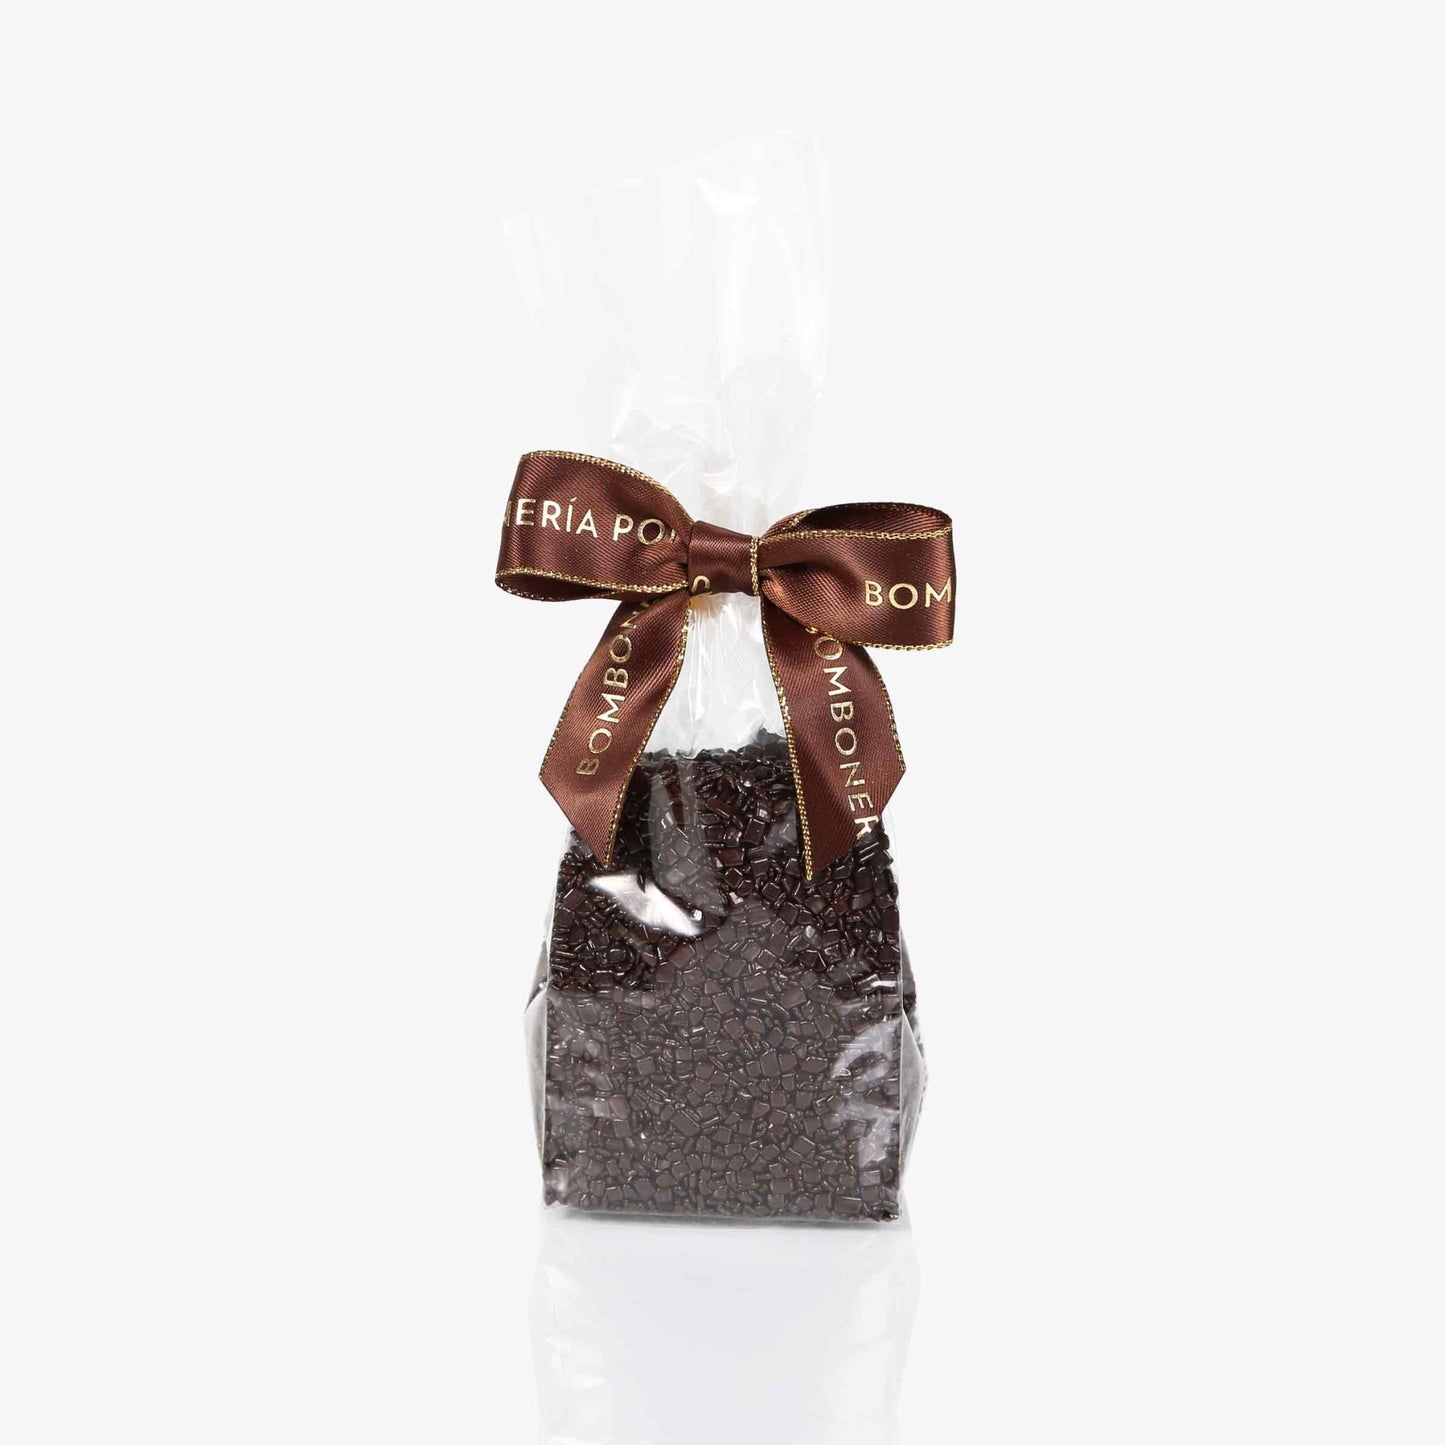 Escamas de Chocolate - Bolsa 250g - Bombonería Pons -